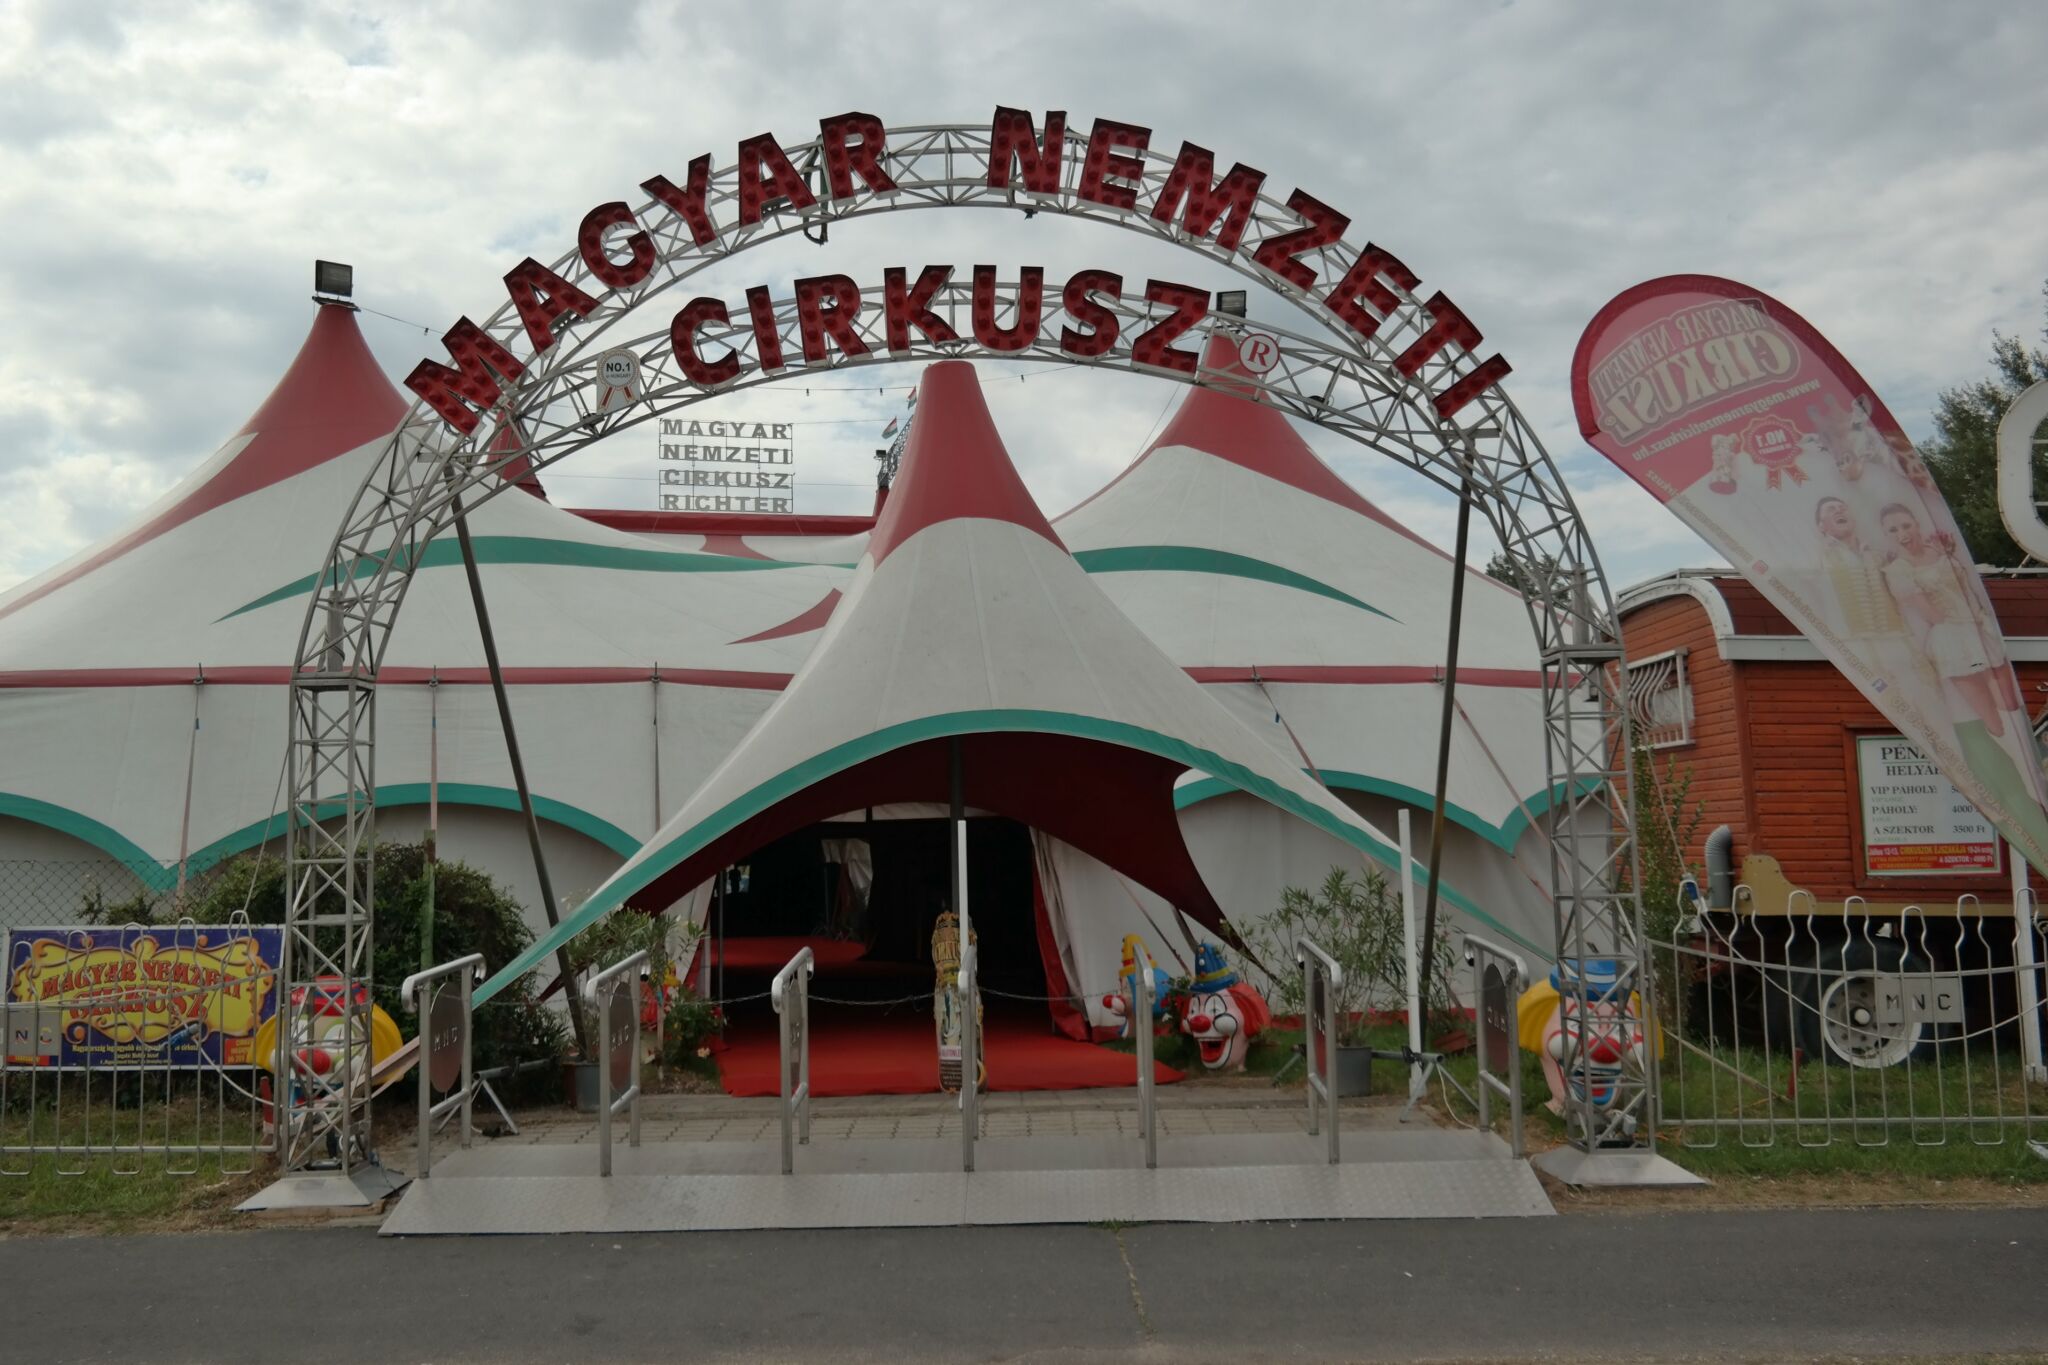 magyar nemzeti cirkusz jegyvásárlás